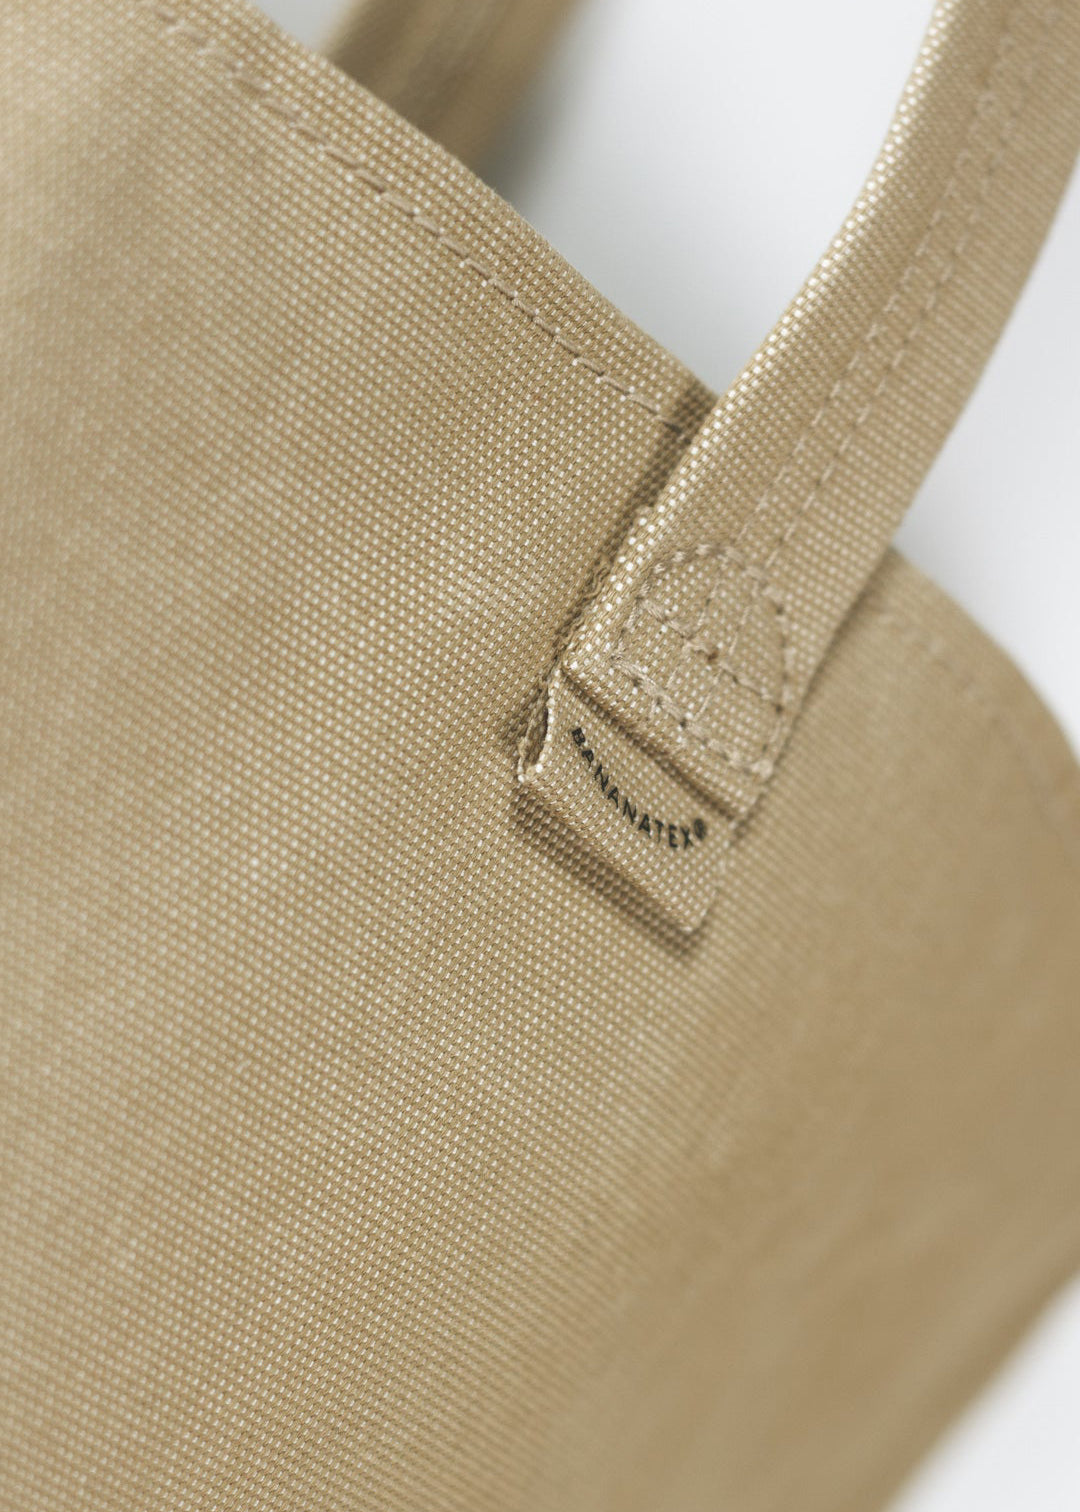 Bananatex Tote Bag Medium – Sand / Raven